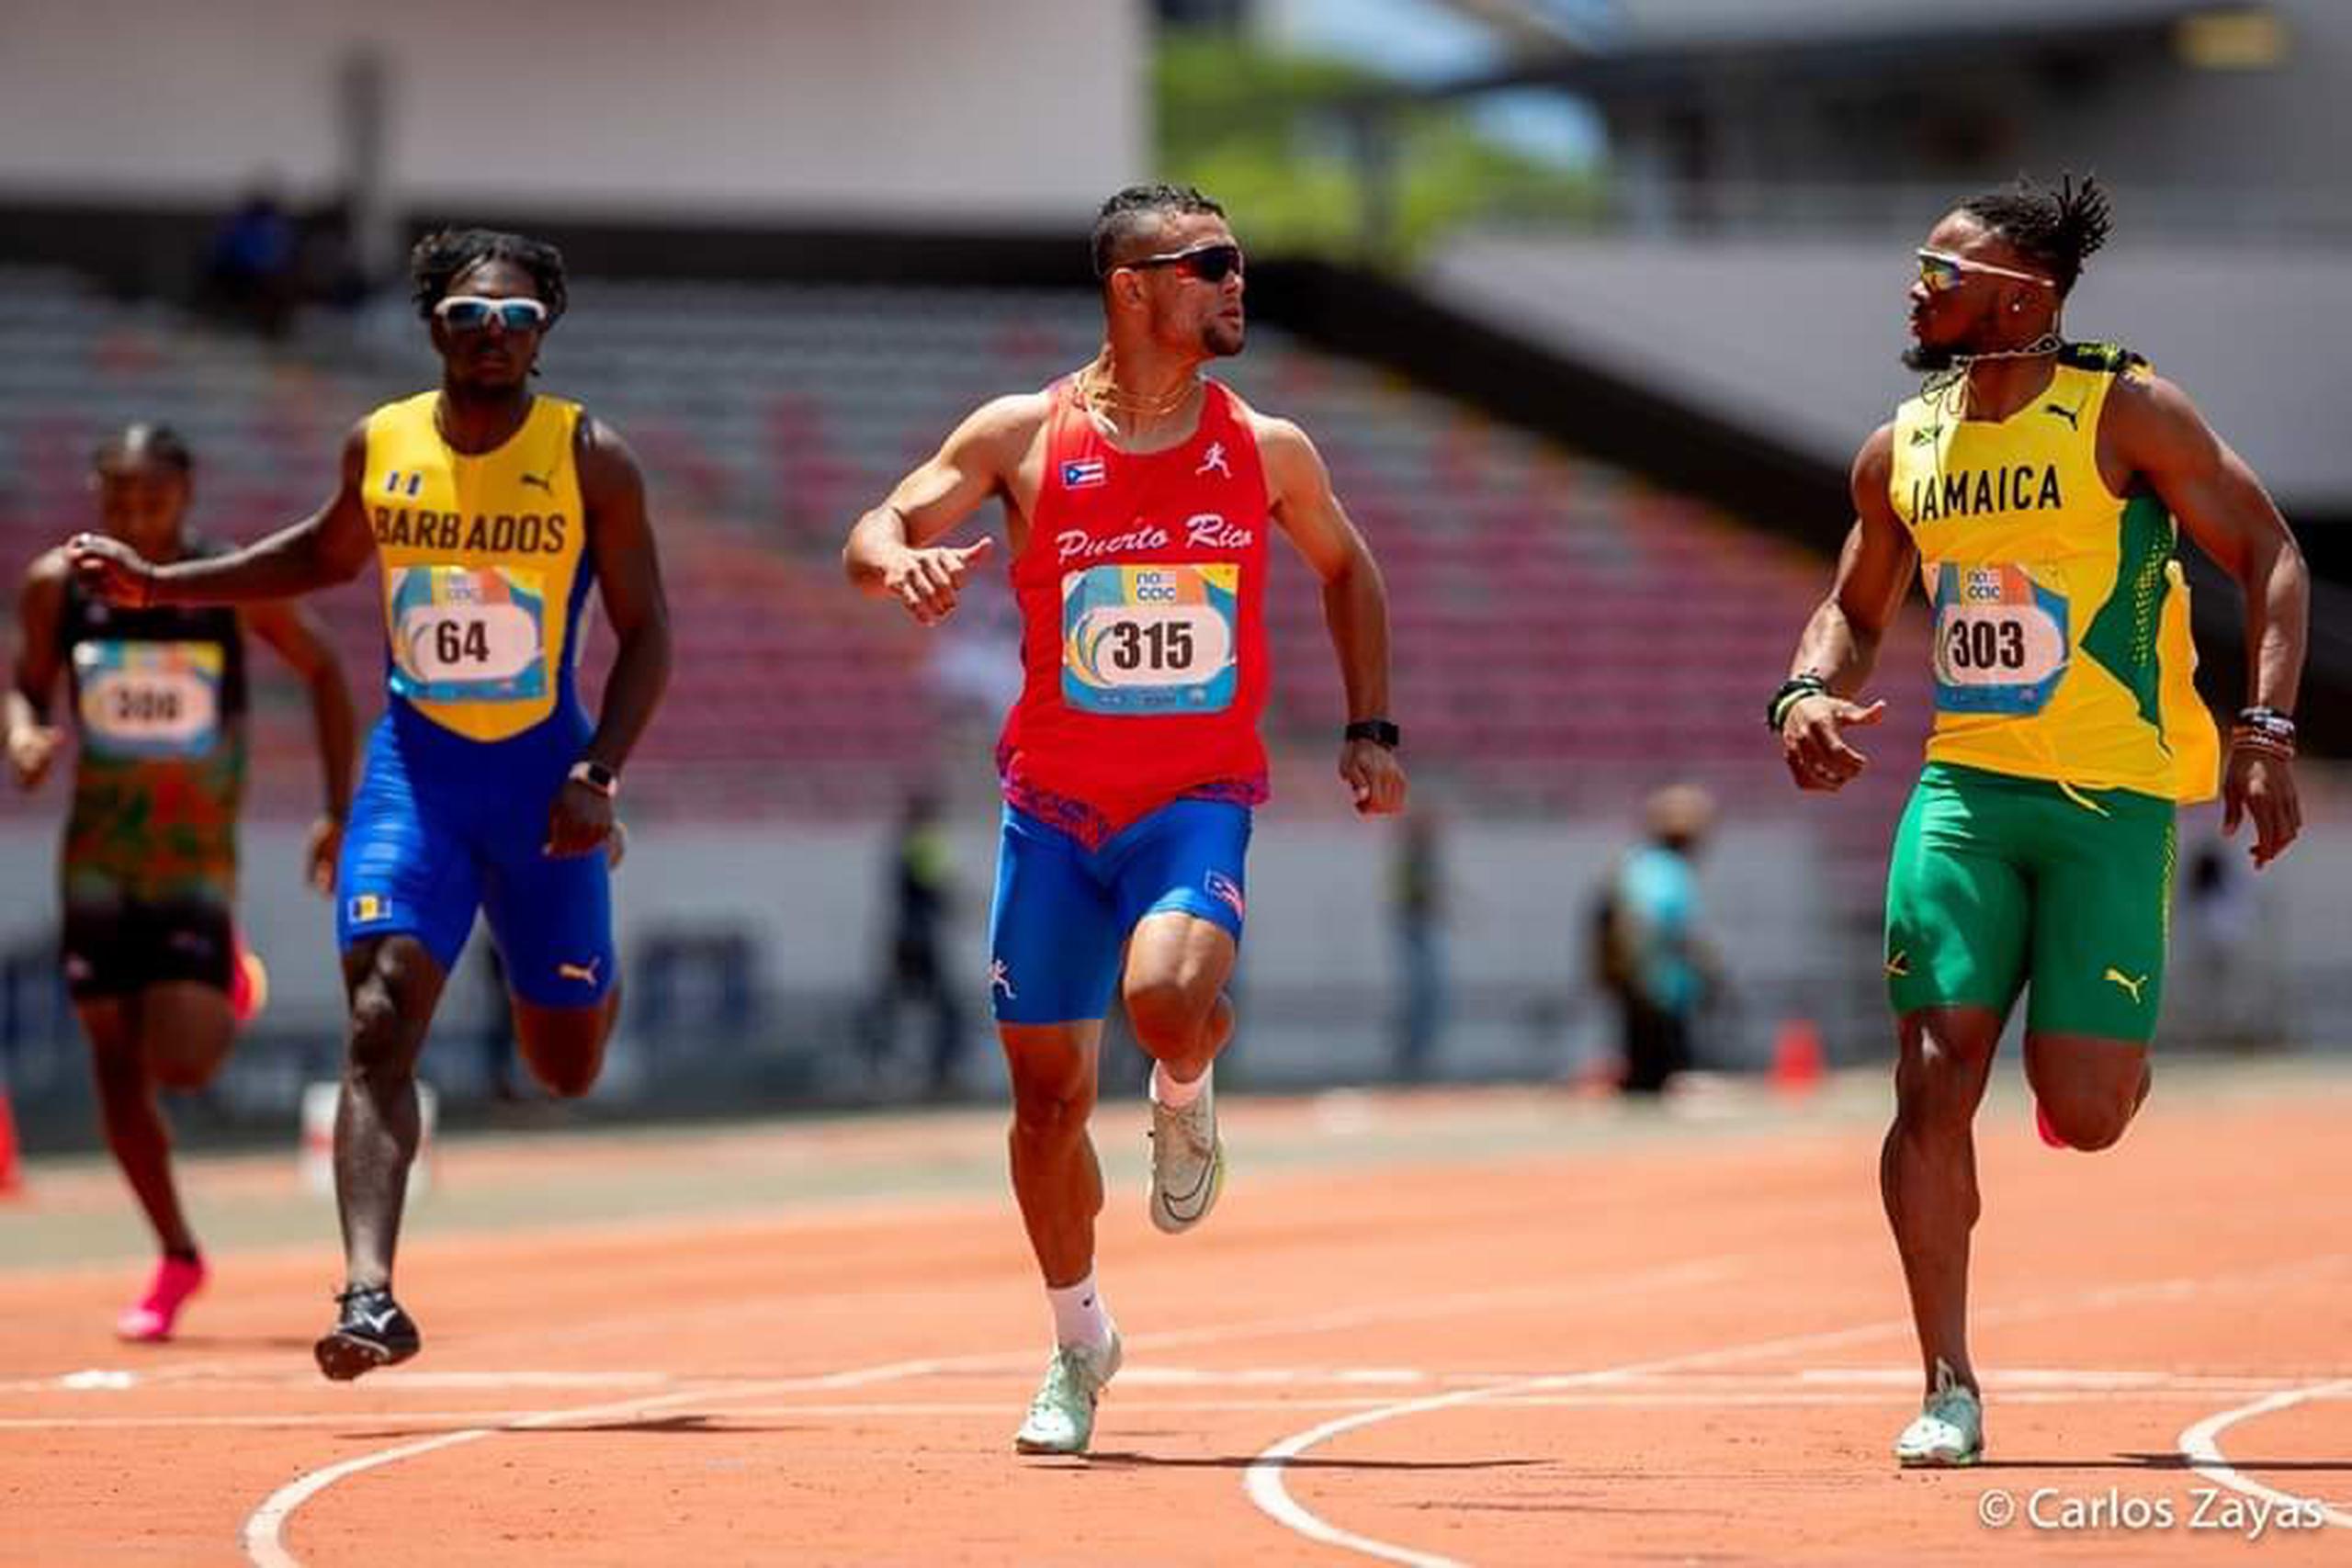 Este es el momento captado por el fotógrafo Carlos Zayas Zayas en que Diego González, al centro, cruza la meta con una nueva marca nacional adulta para Puerto Rico en los 100 metros. La carrera fue el Campeonato Nacac U23 en San José, Costa Rica.